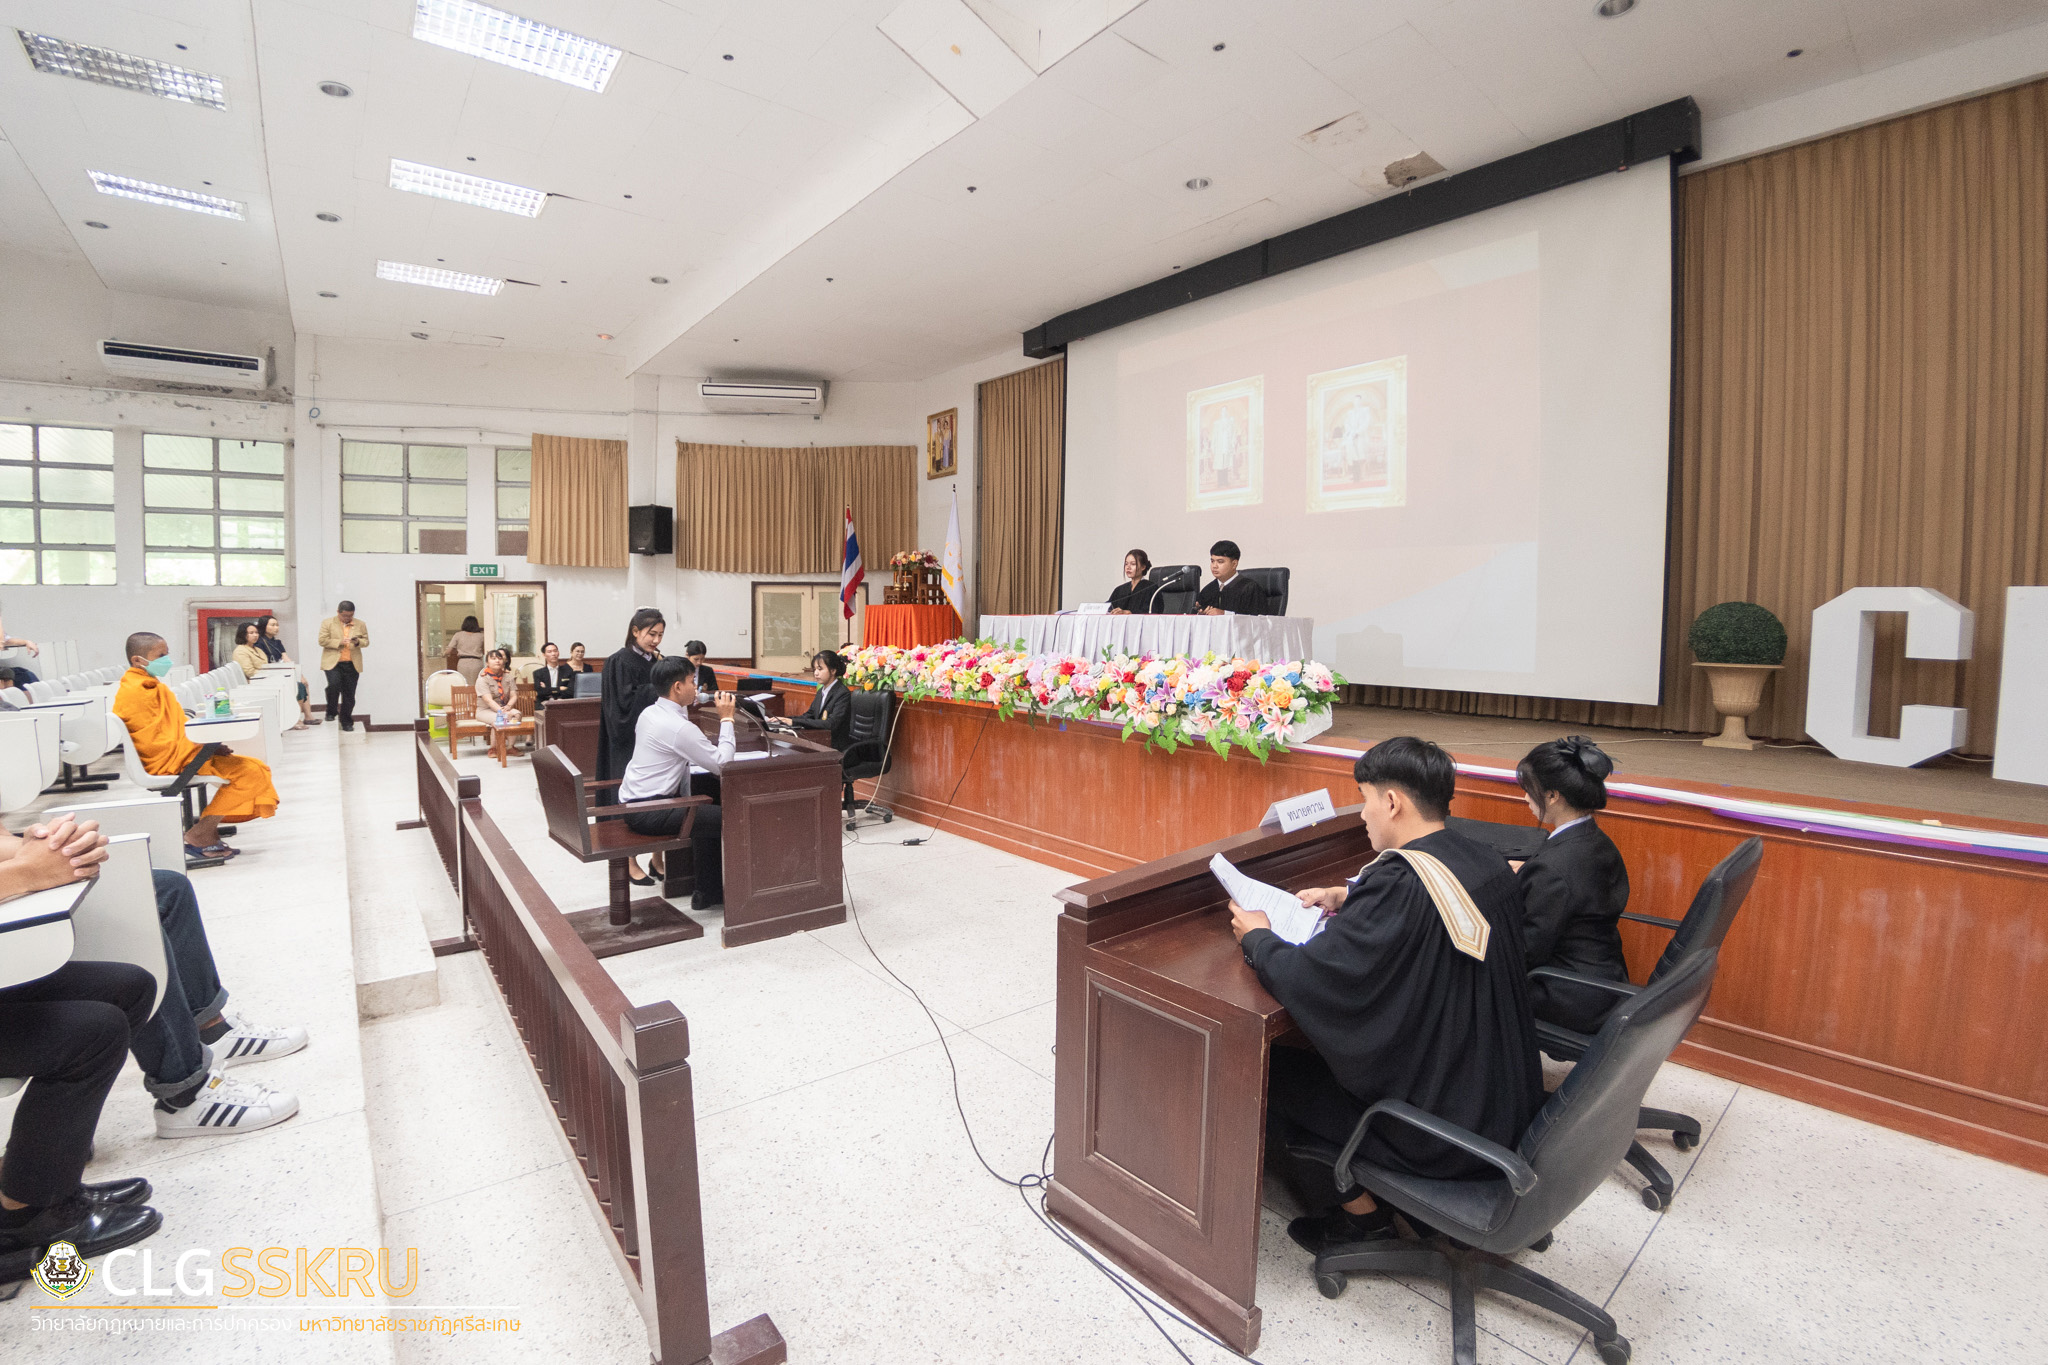 คณะโรงเรียนวัดหลวงวิทยา เข้าศึกษาดูงานวิทยาลัยกฎหมายและการปกครอง เมื่อวันที่ 12 กรกฎาคม 2566